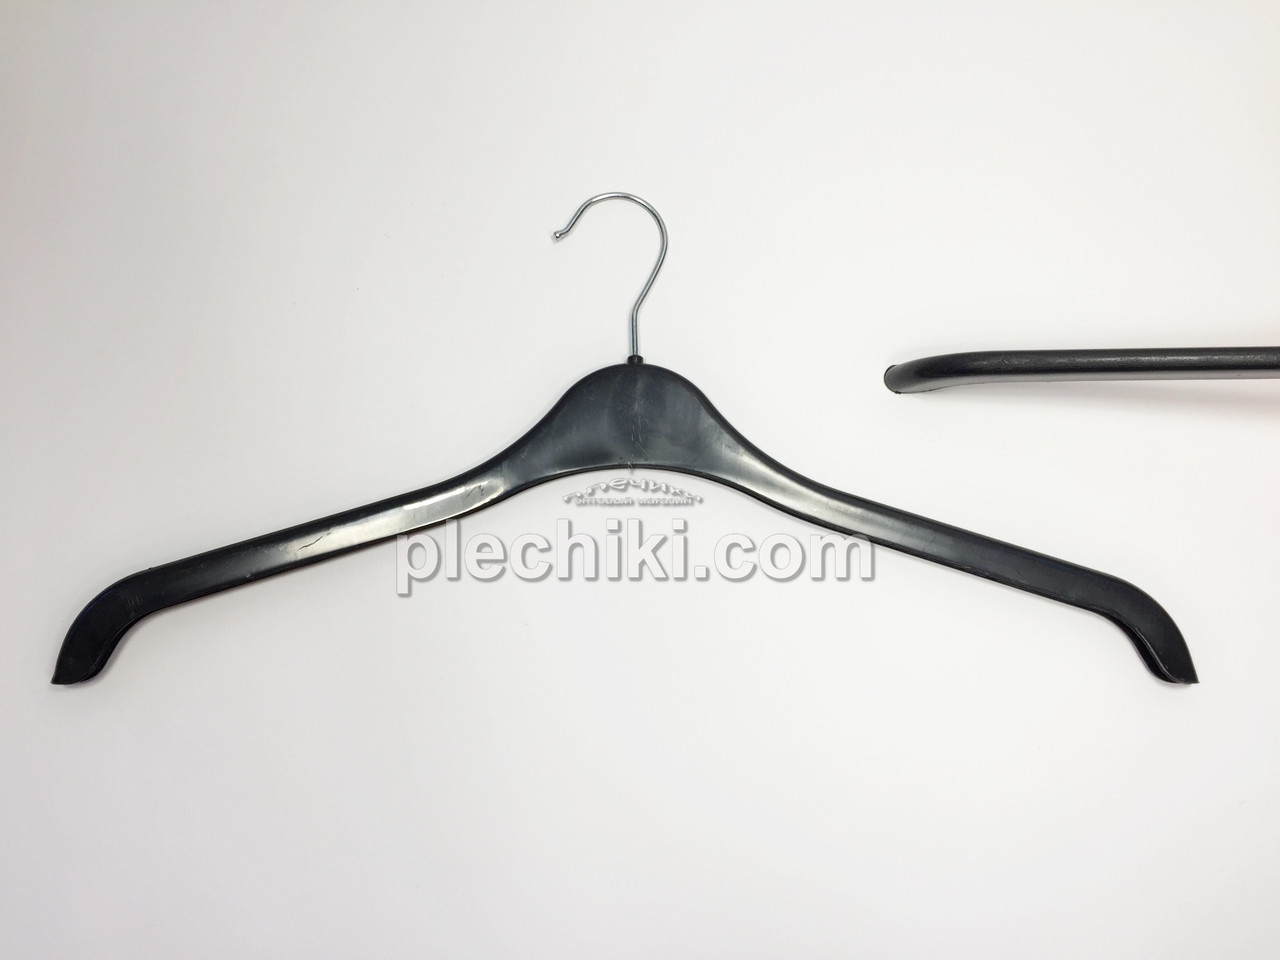 Пластмасові плічка вішалки для одягу SH-47 чорного кольору, довжина 470 мм